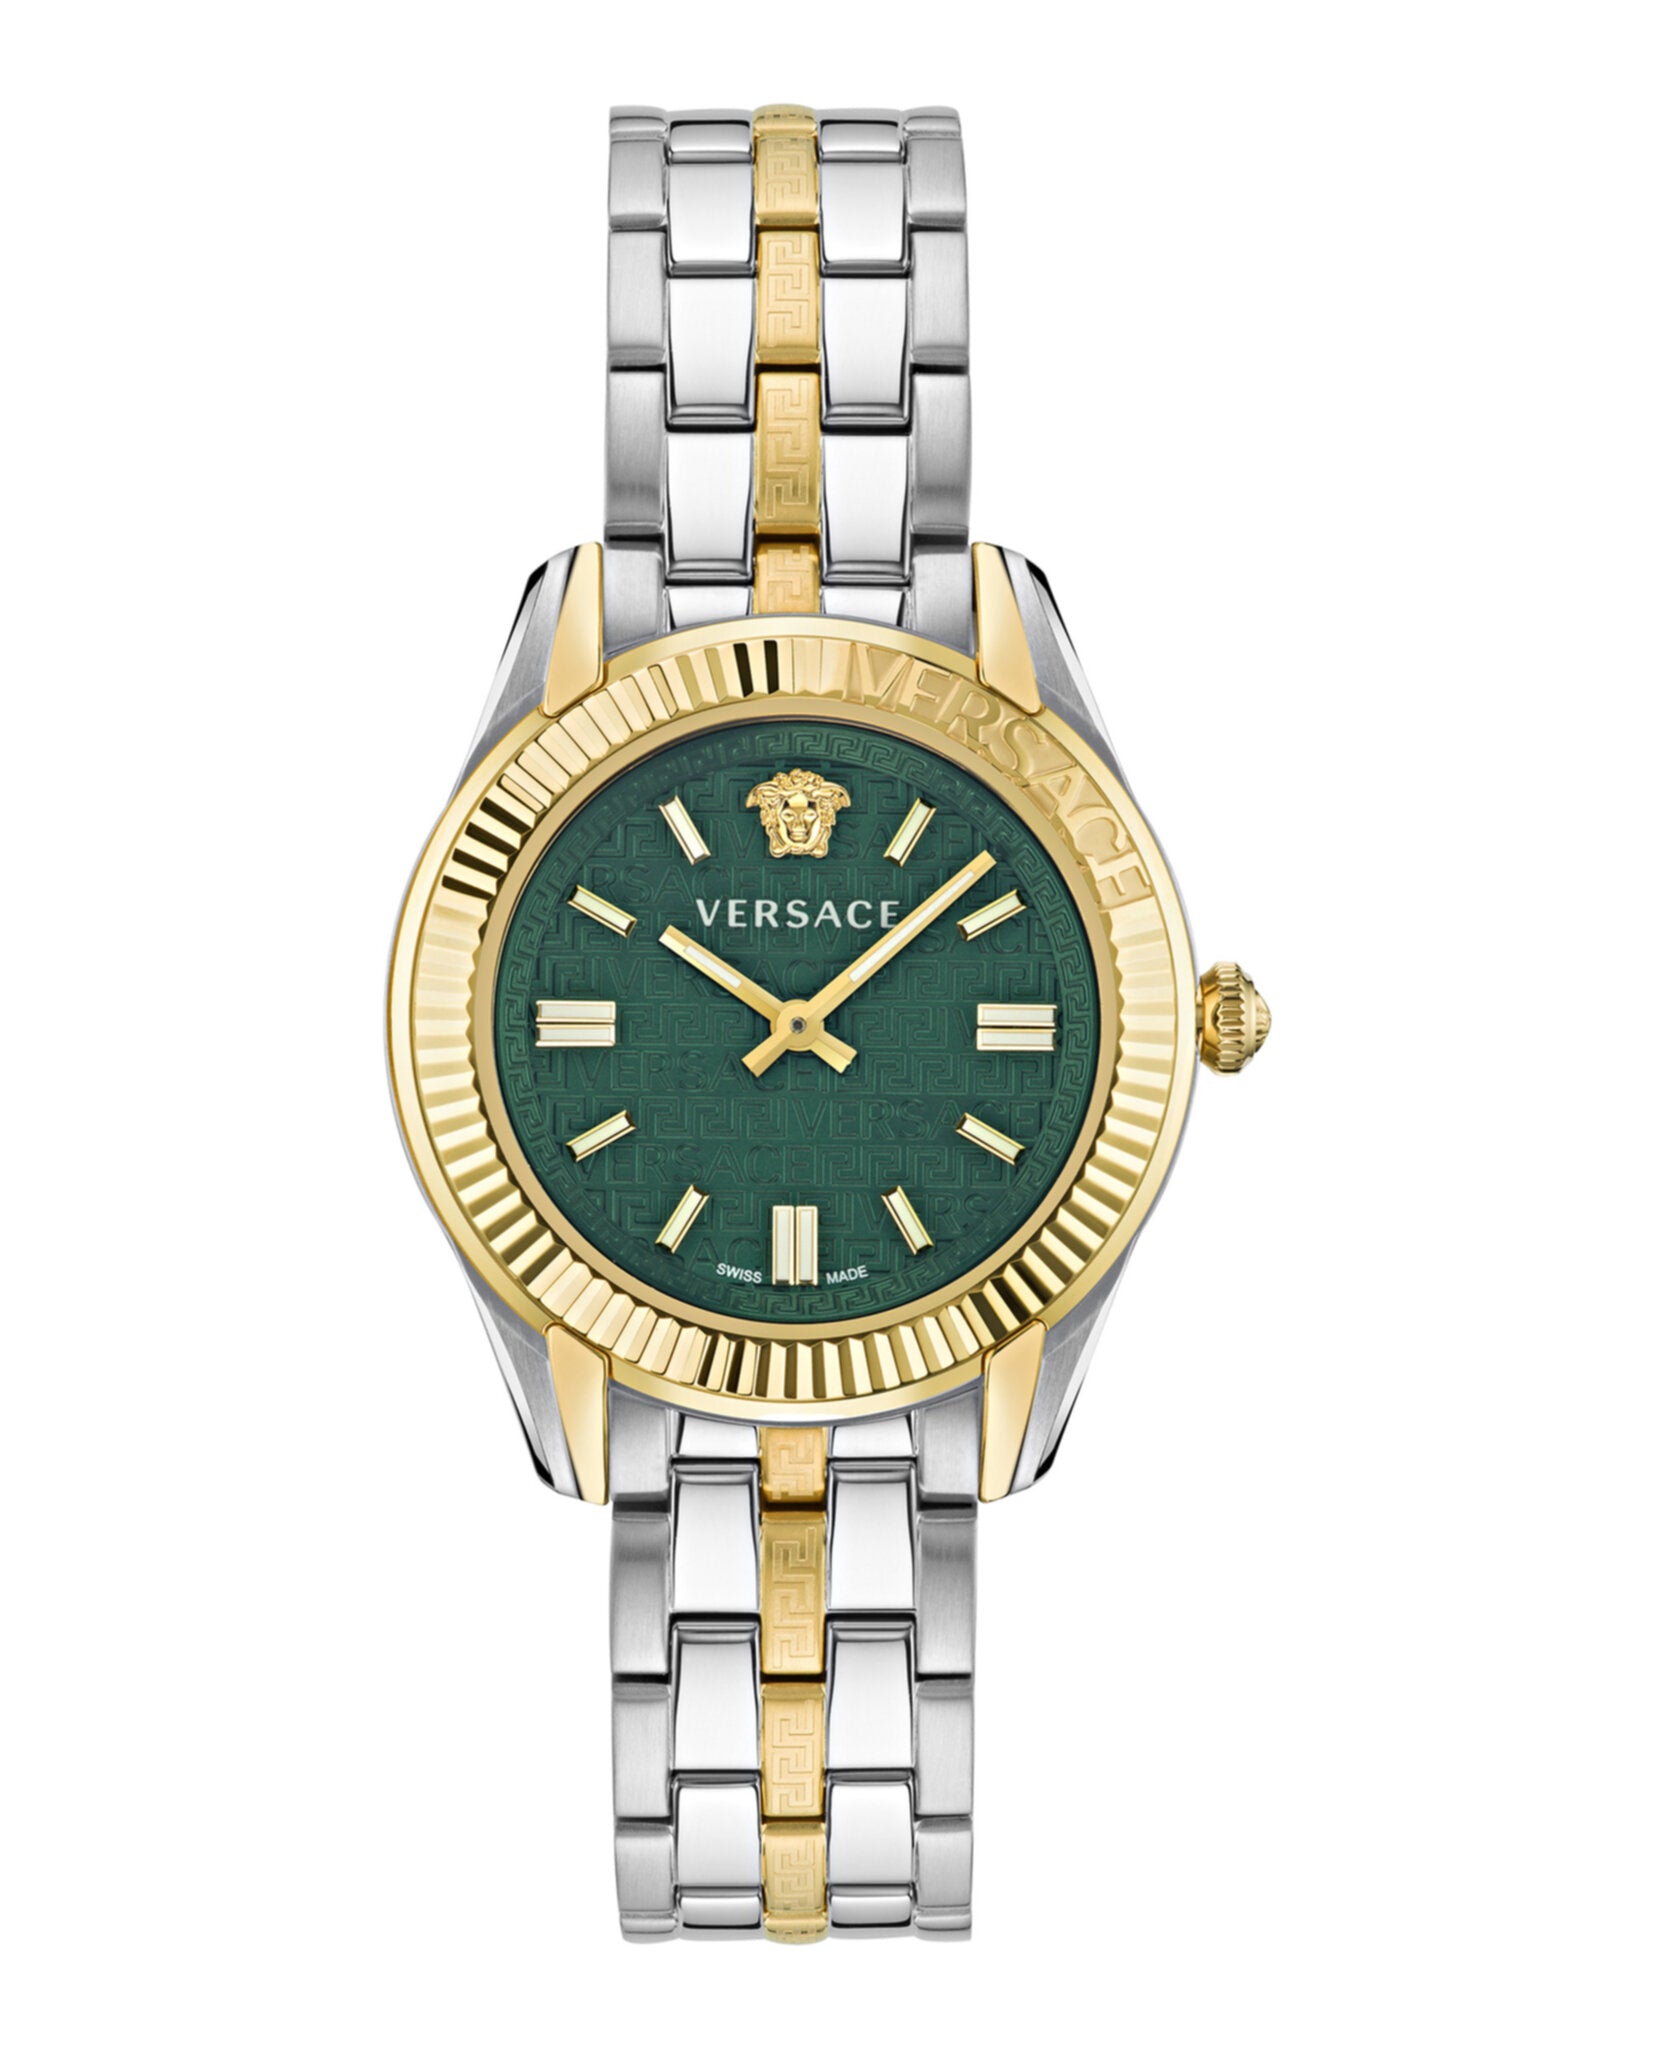 Greca Time Bracelet Watch